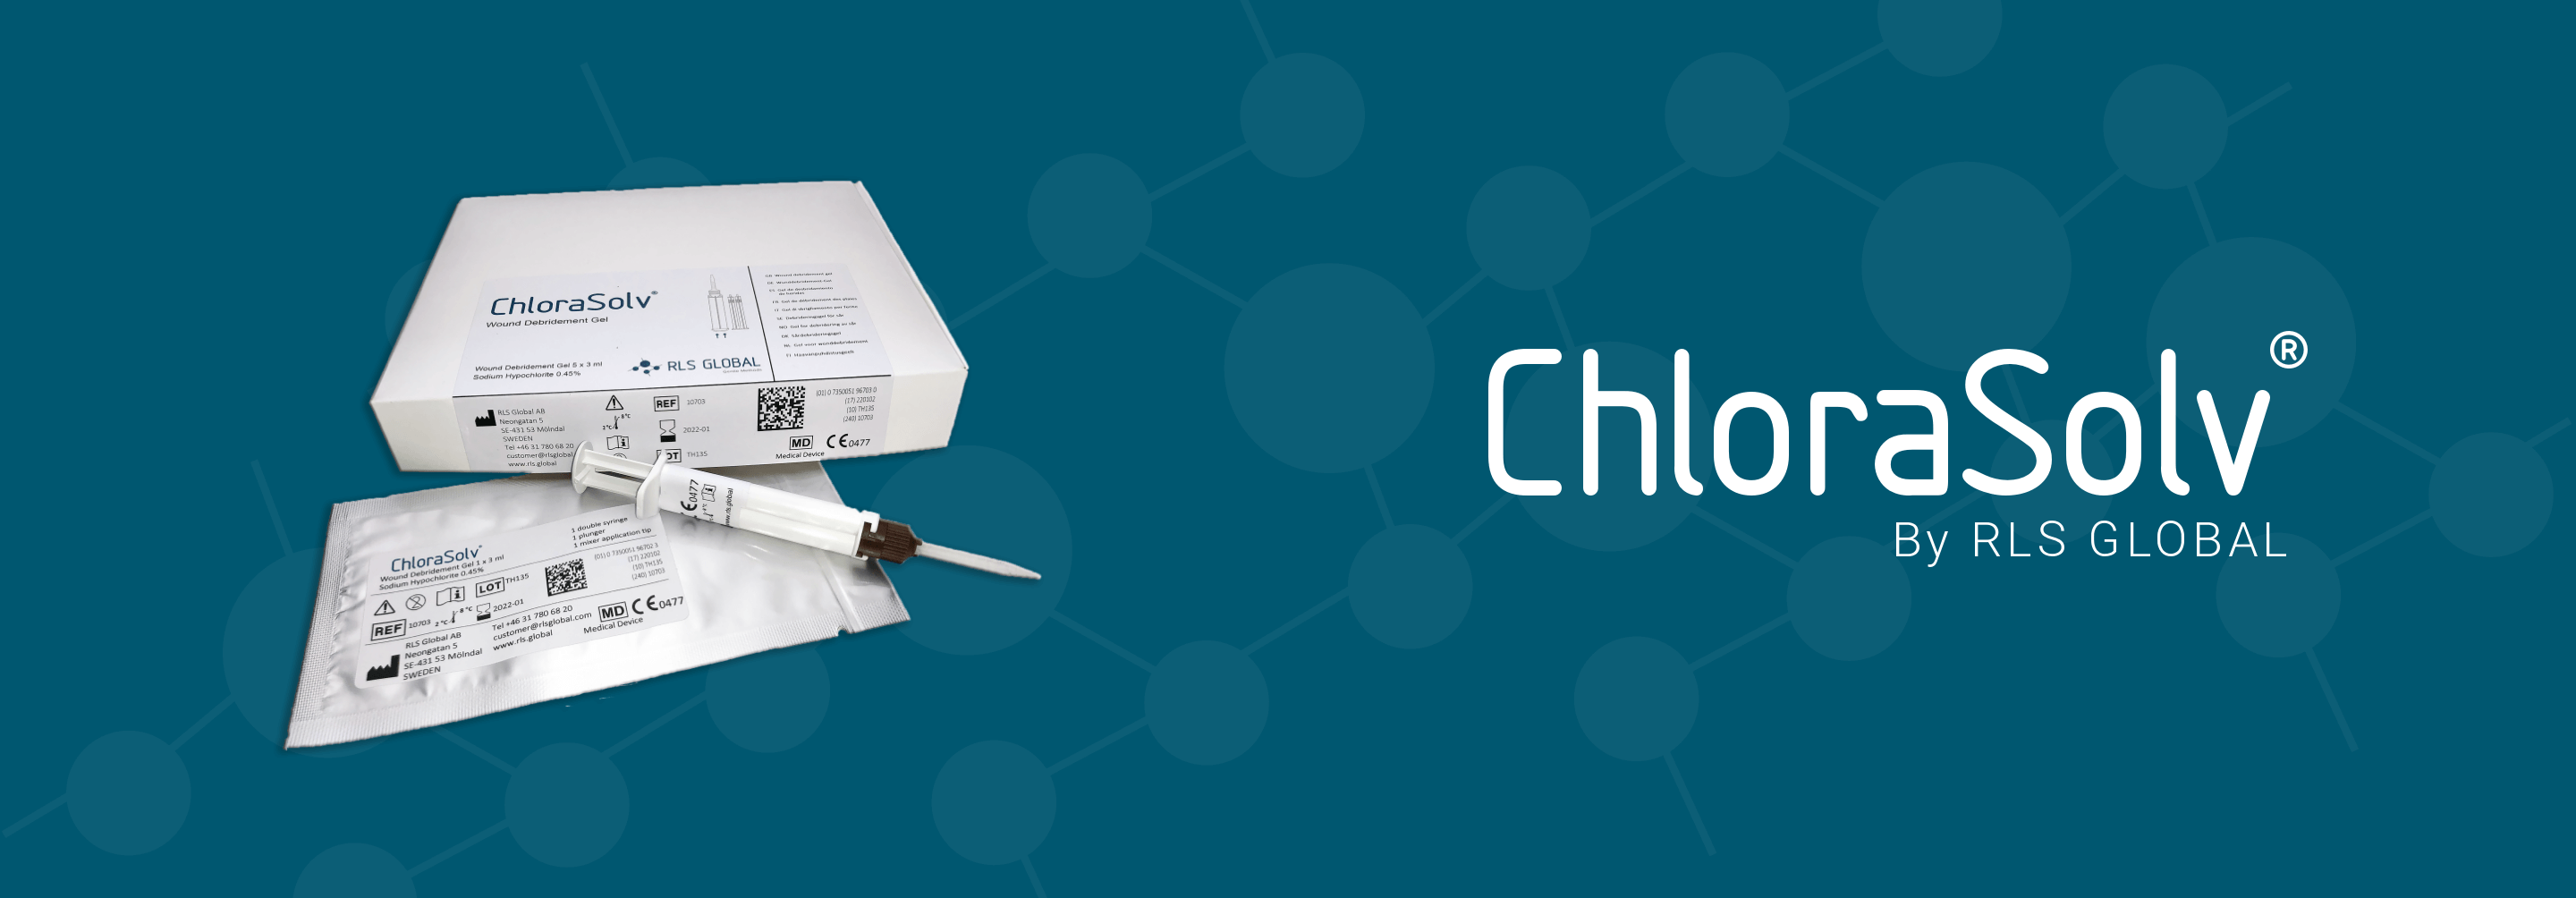 Chlorasolv Pack Image